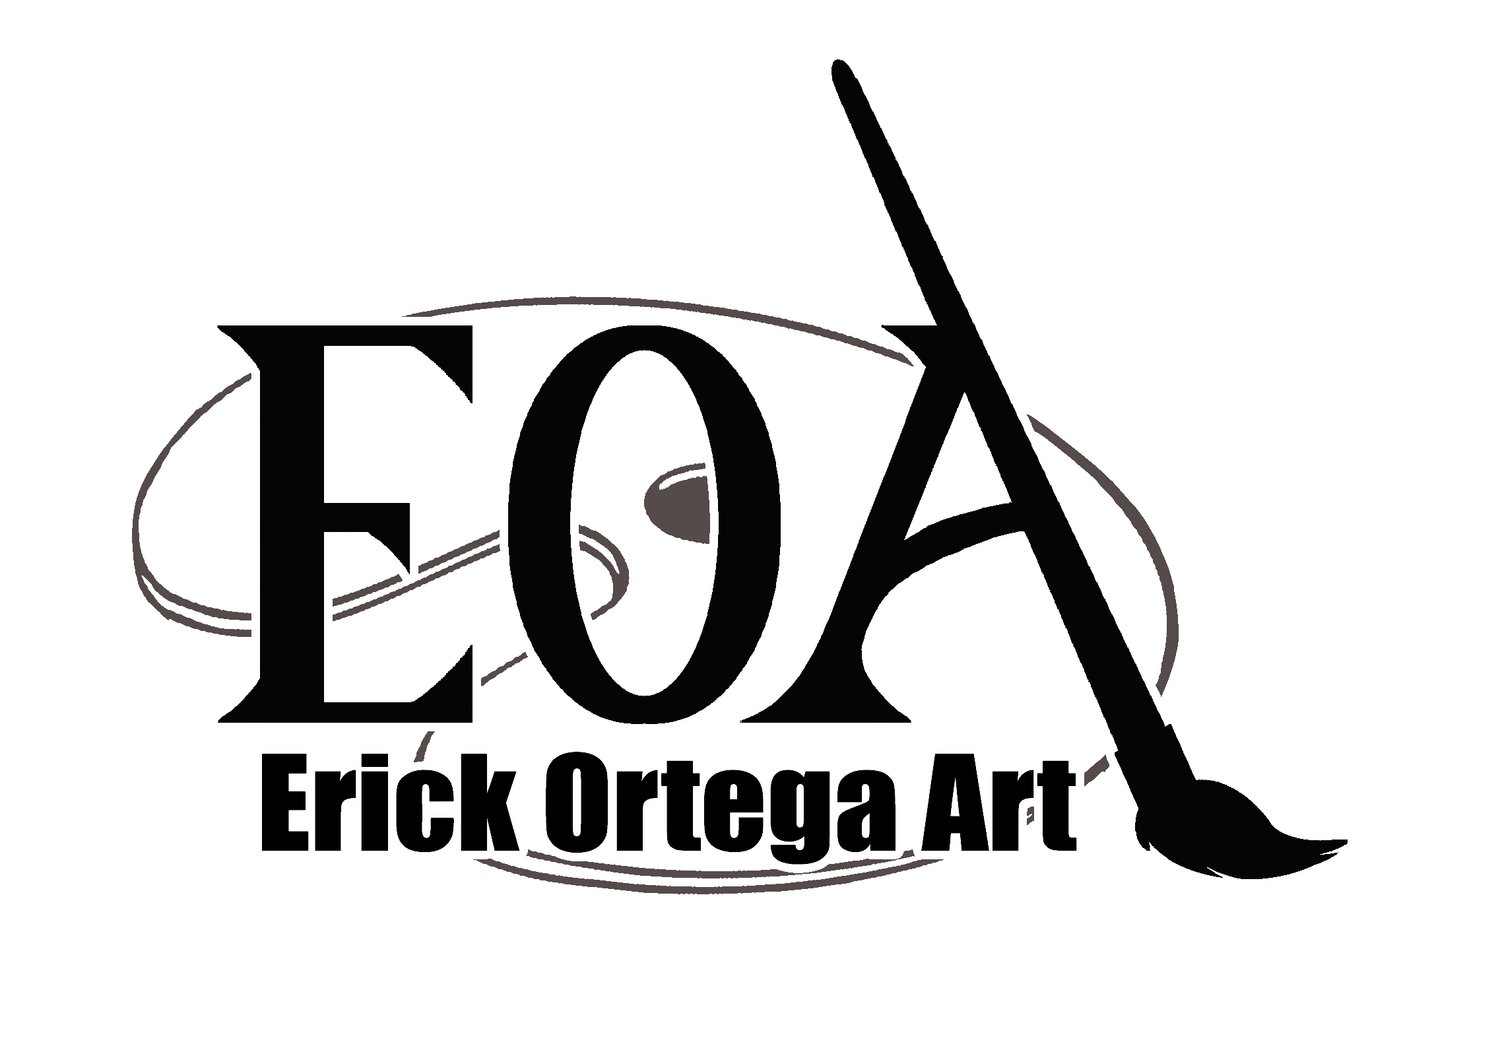 Erick Ortega Art